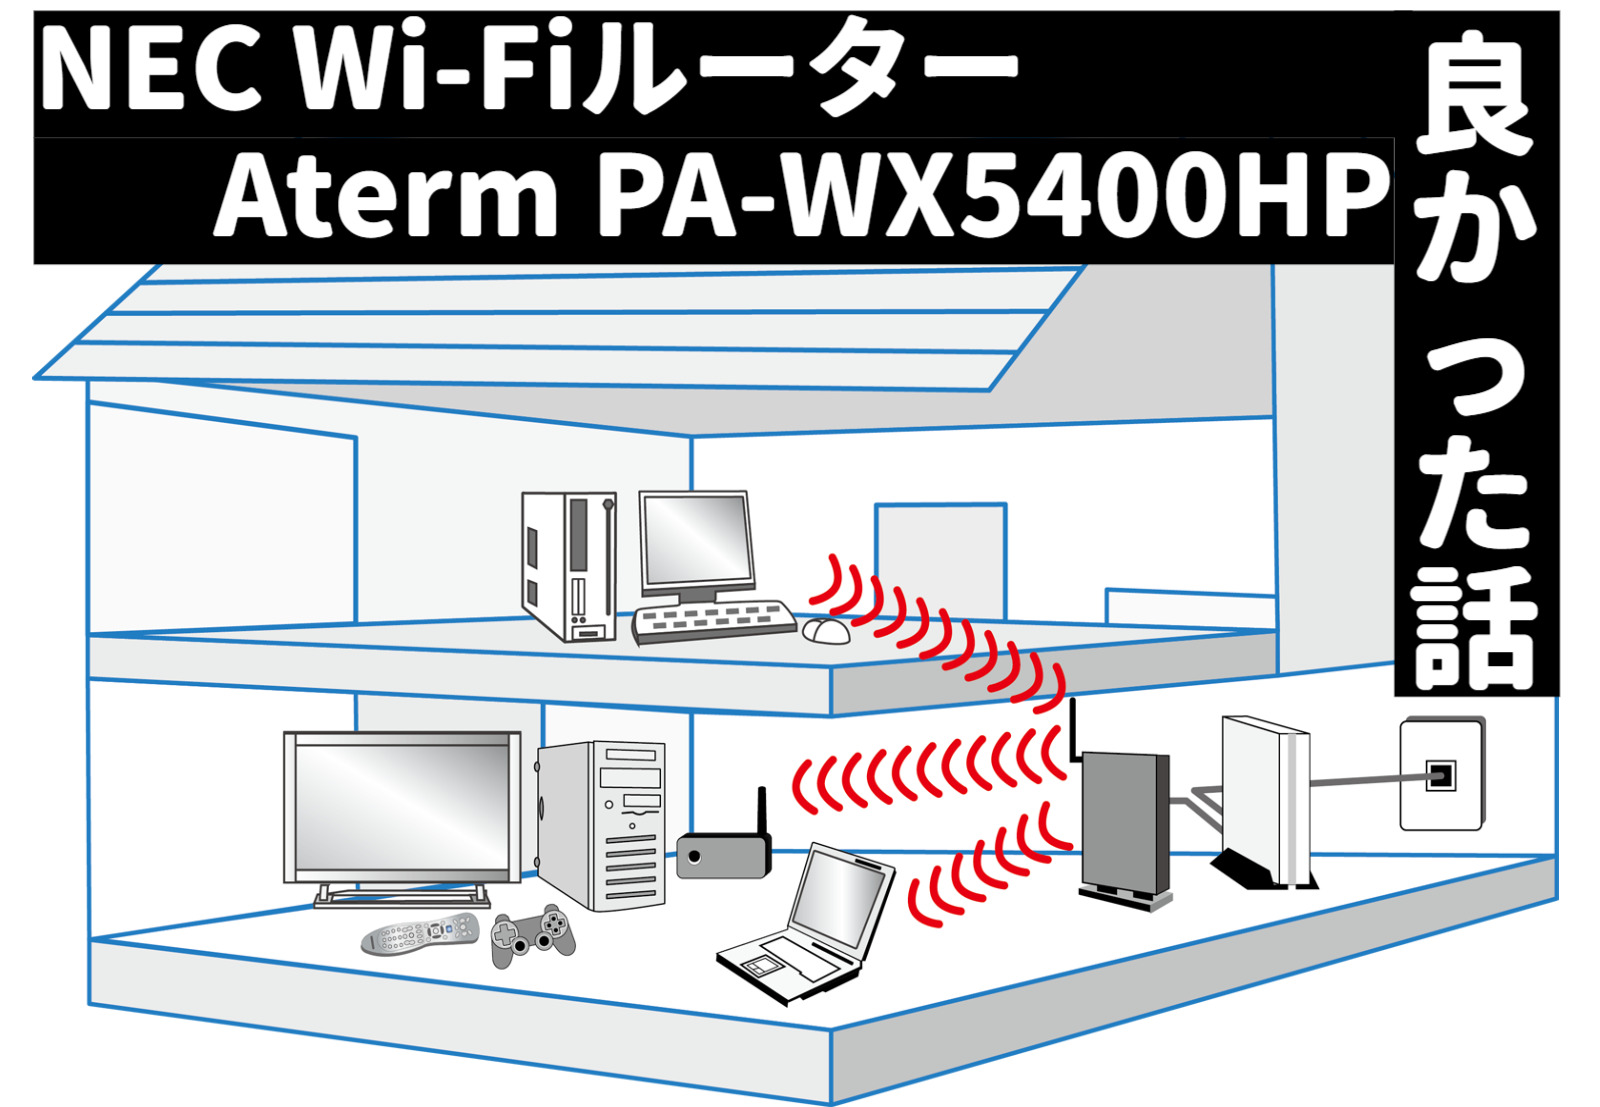 NEC Wi-Fiルーター Aterm PA-WX5400HP が良かった話 | SEブログ